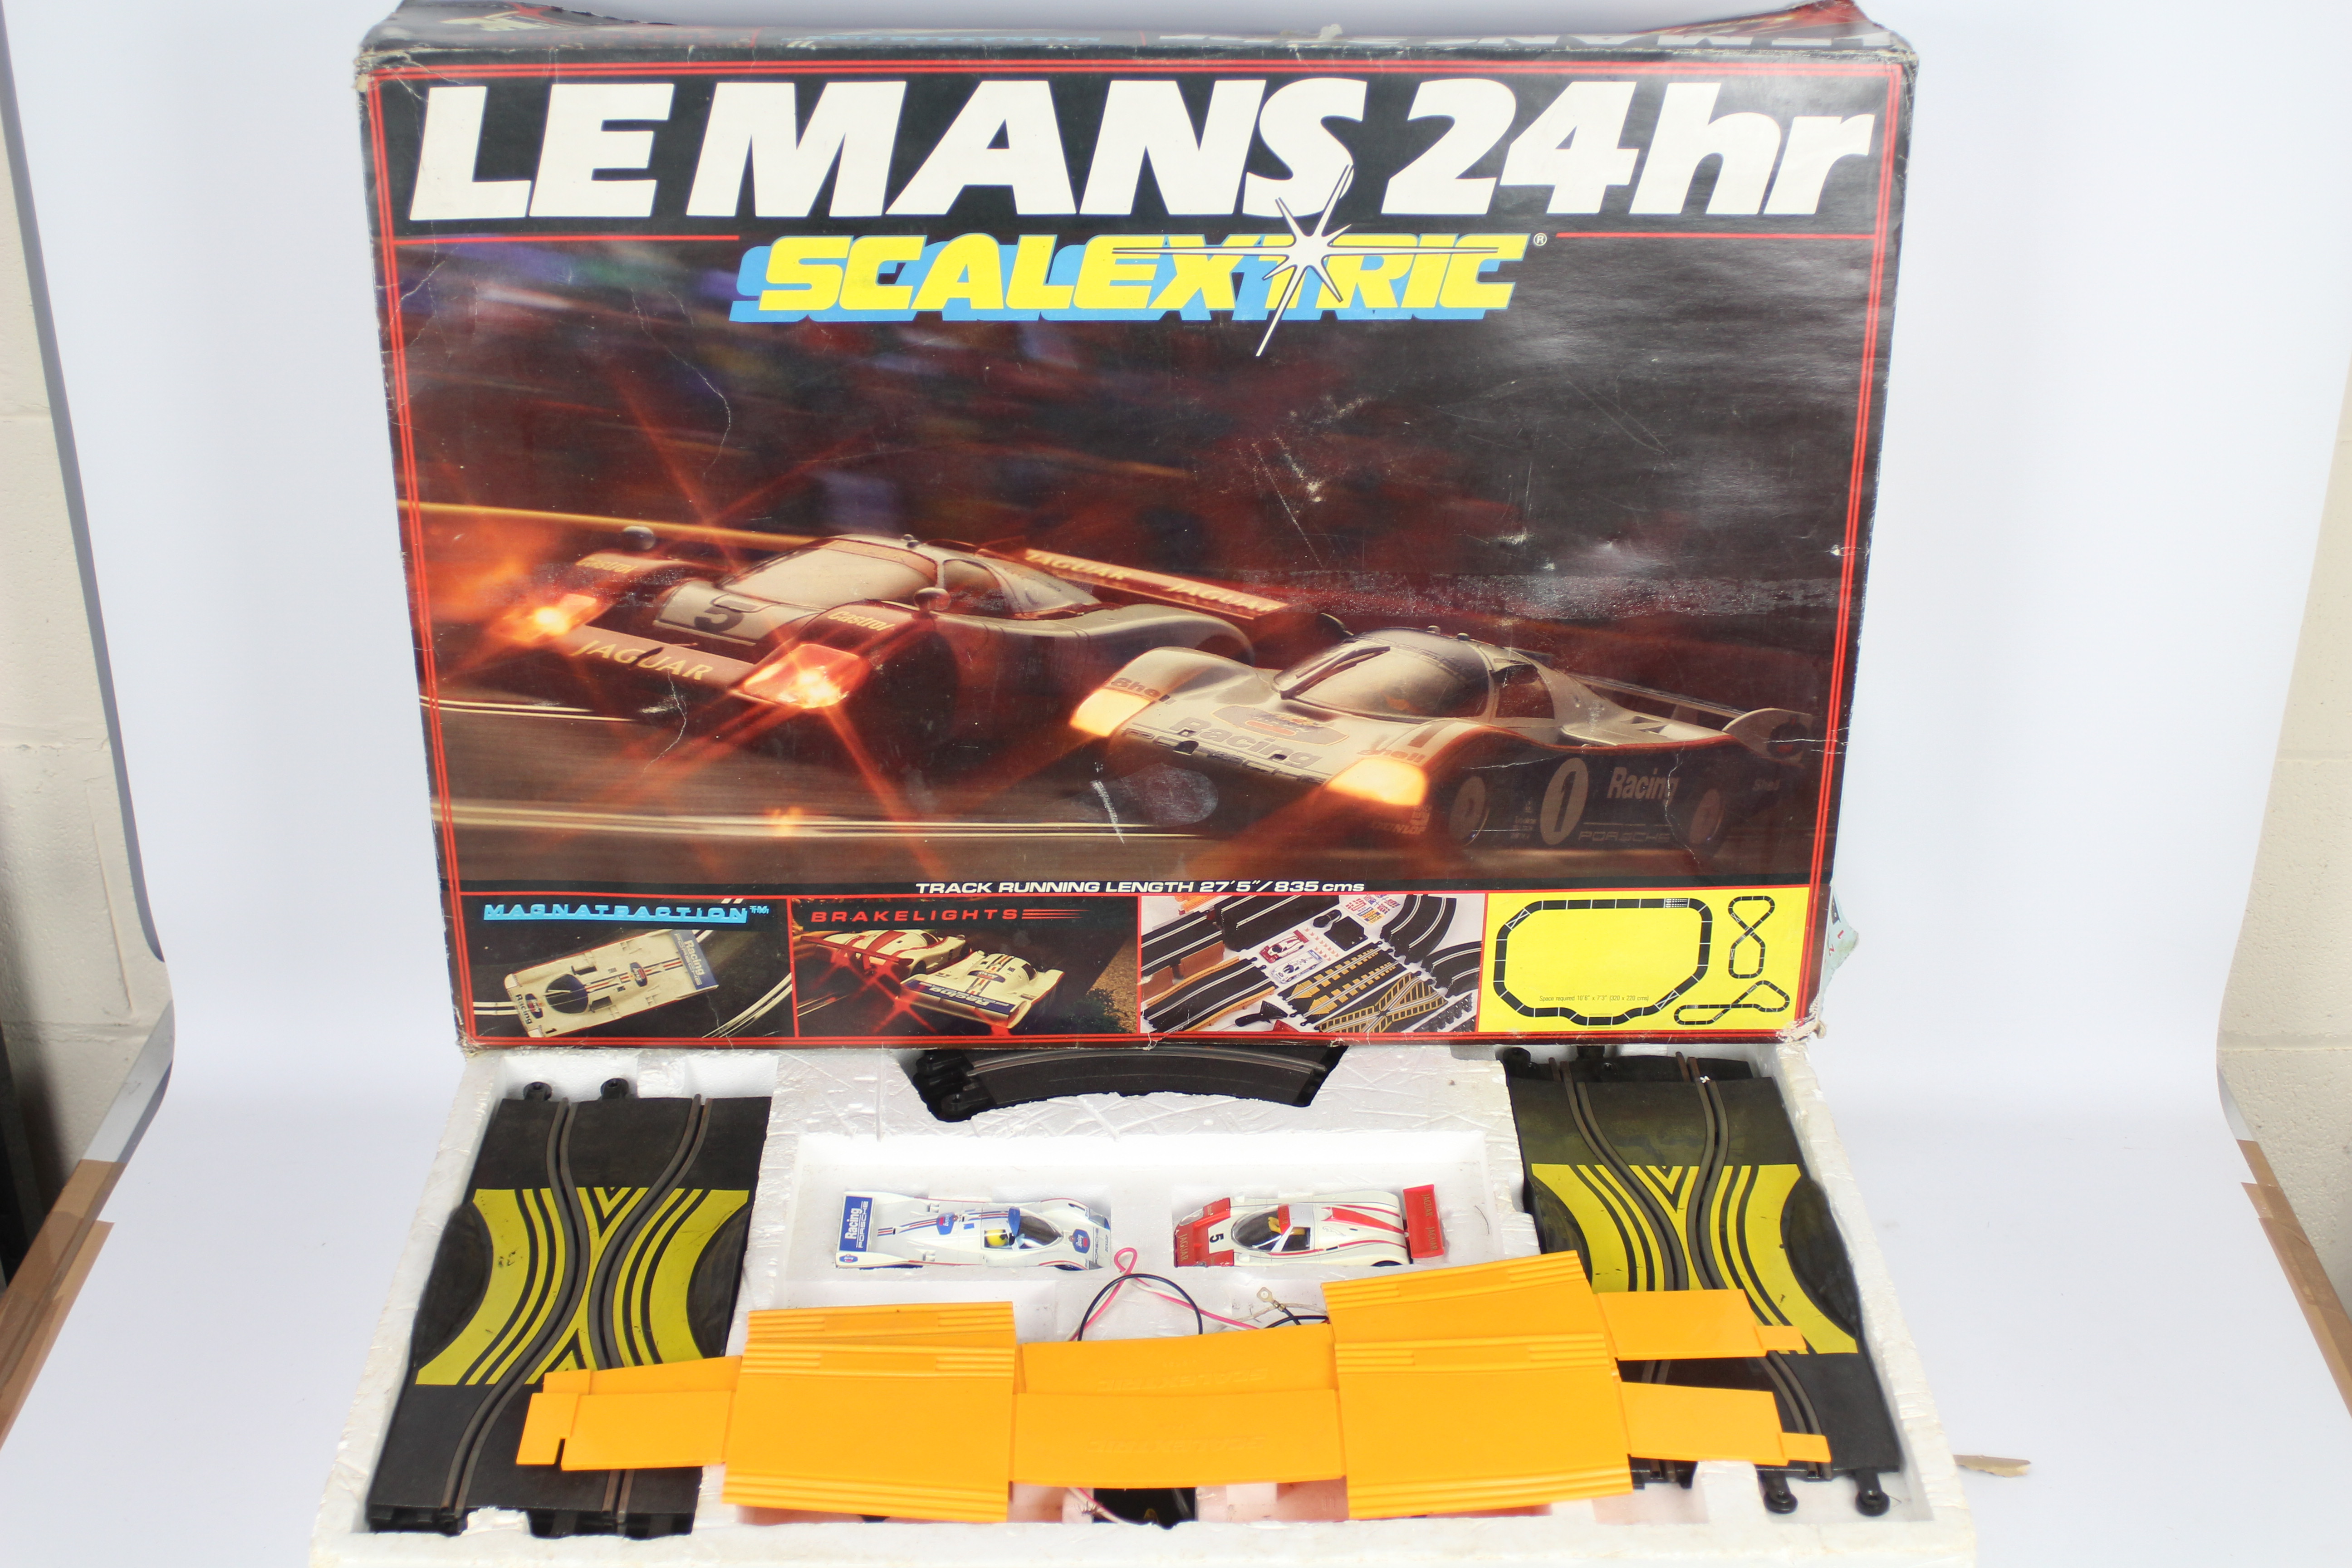 Scalextric - 2 x vintage boxed sets, # C742 Le Mans set with Porsche and Jaguar cars, - Image 2 of 6